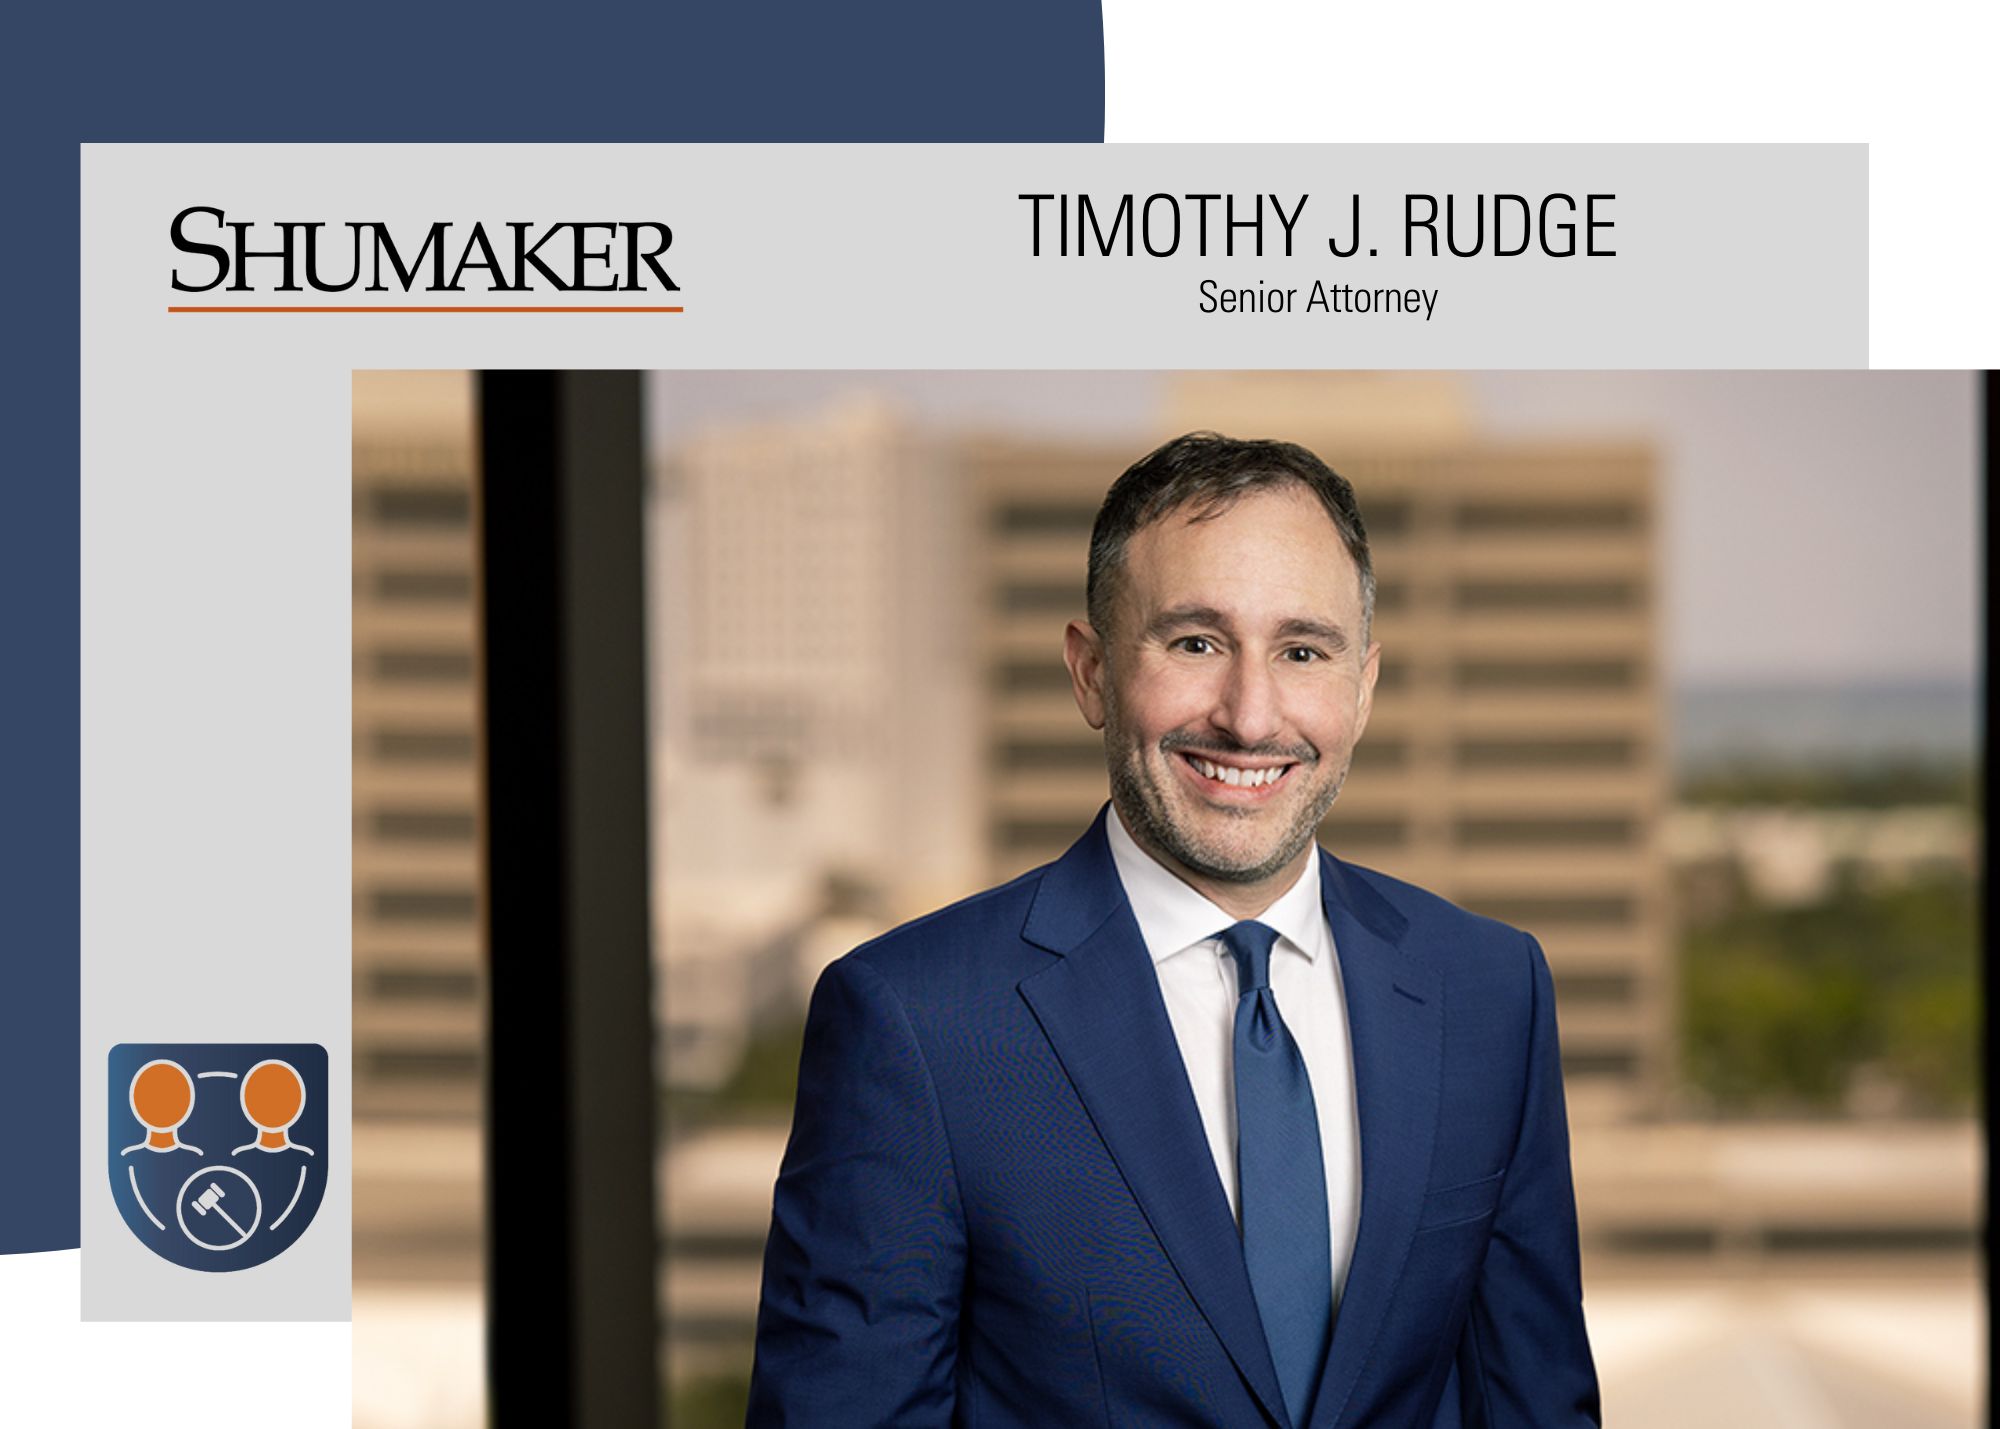 Shumaker Adds Litigator Timothy J. Rudge in Sarasota